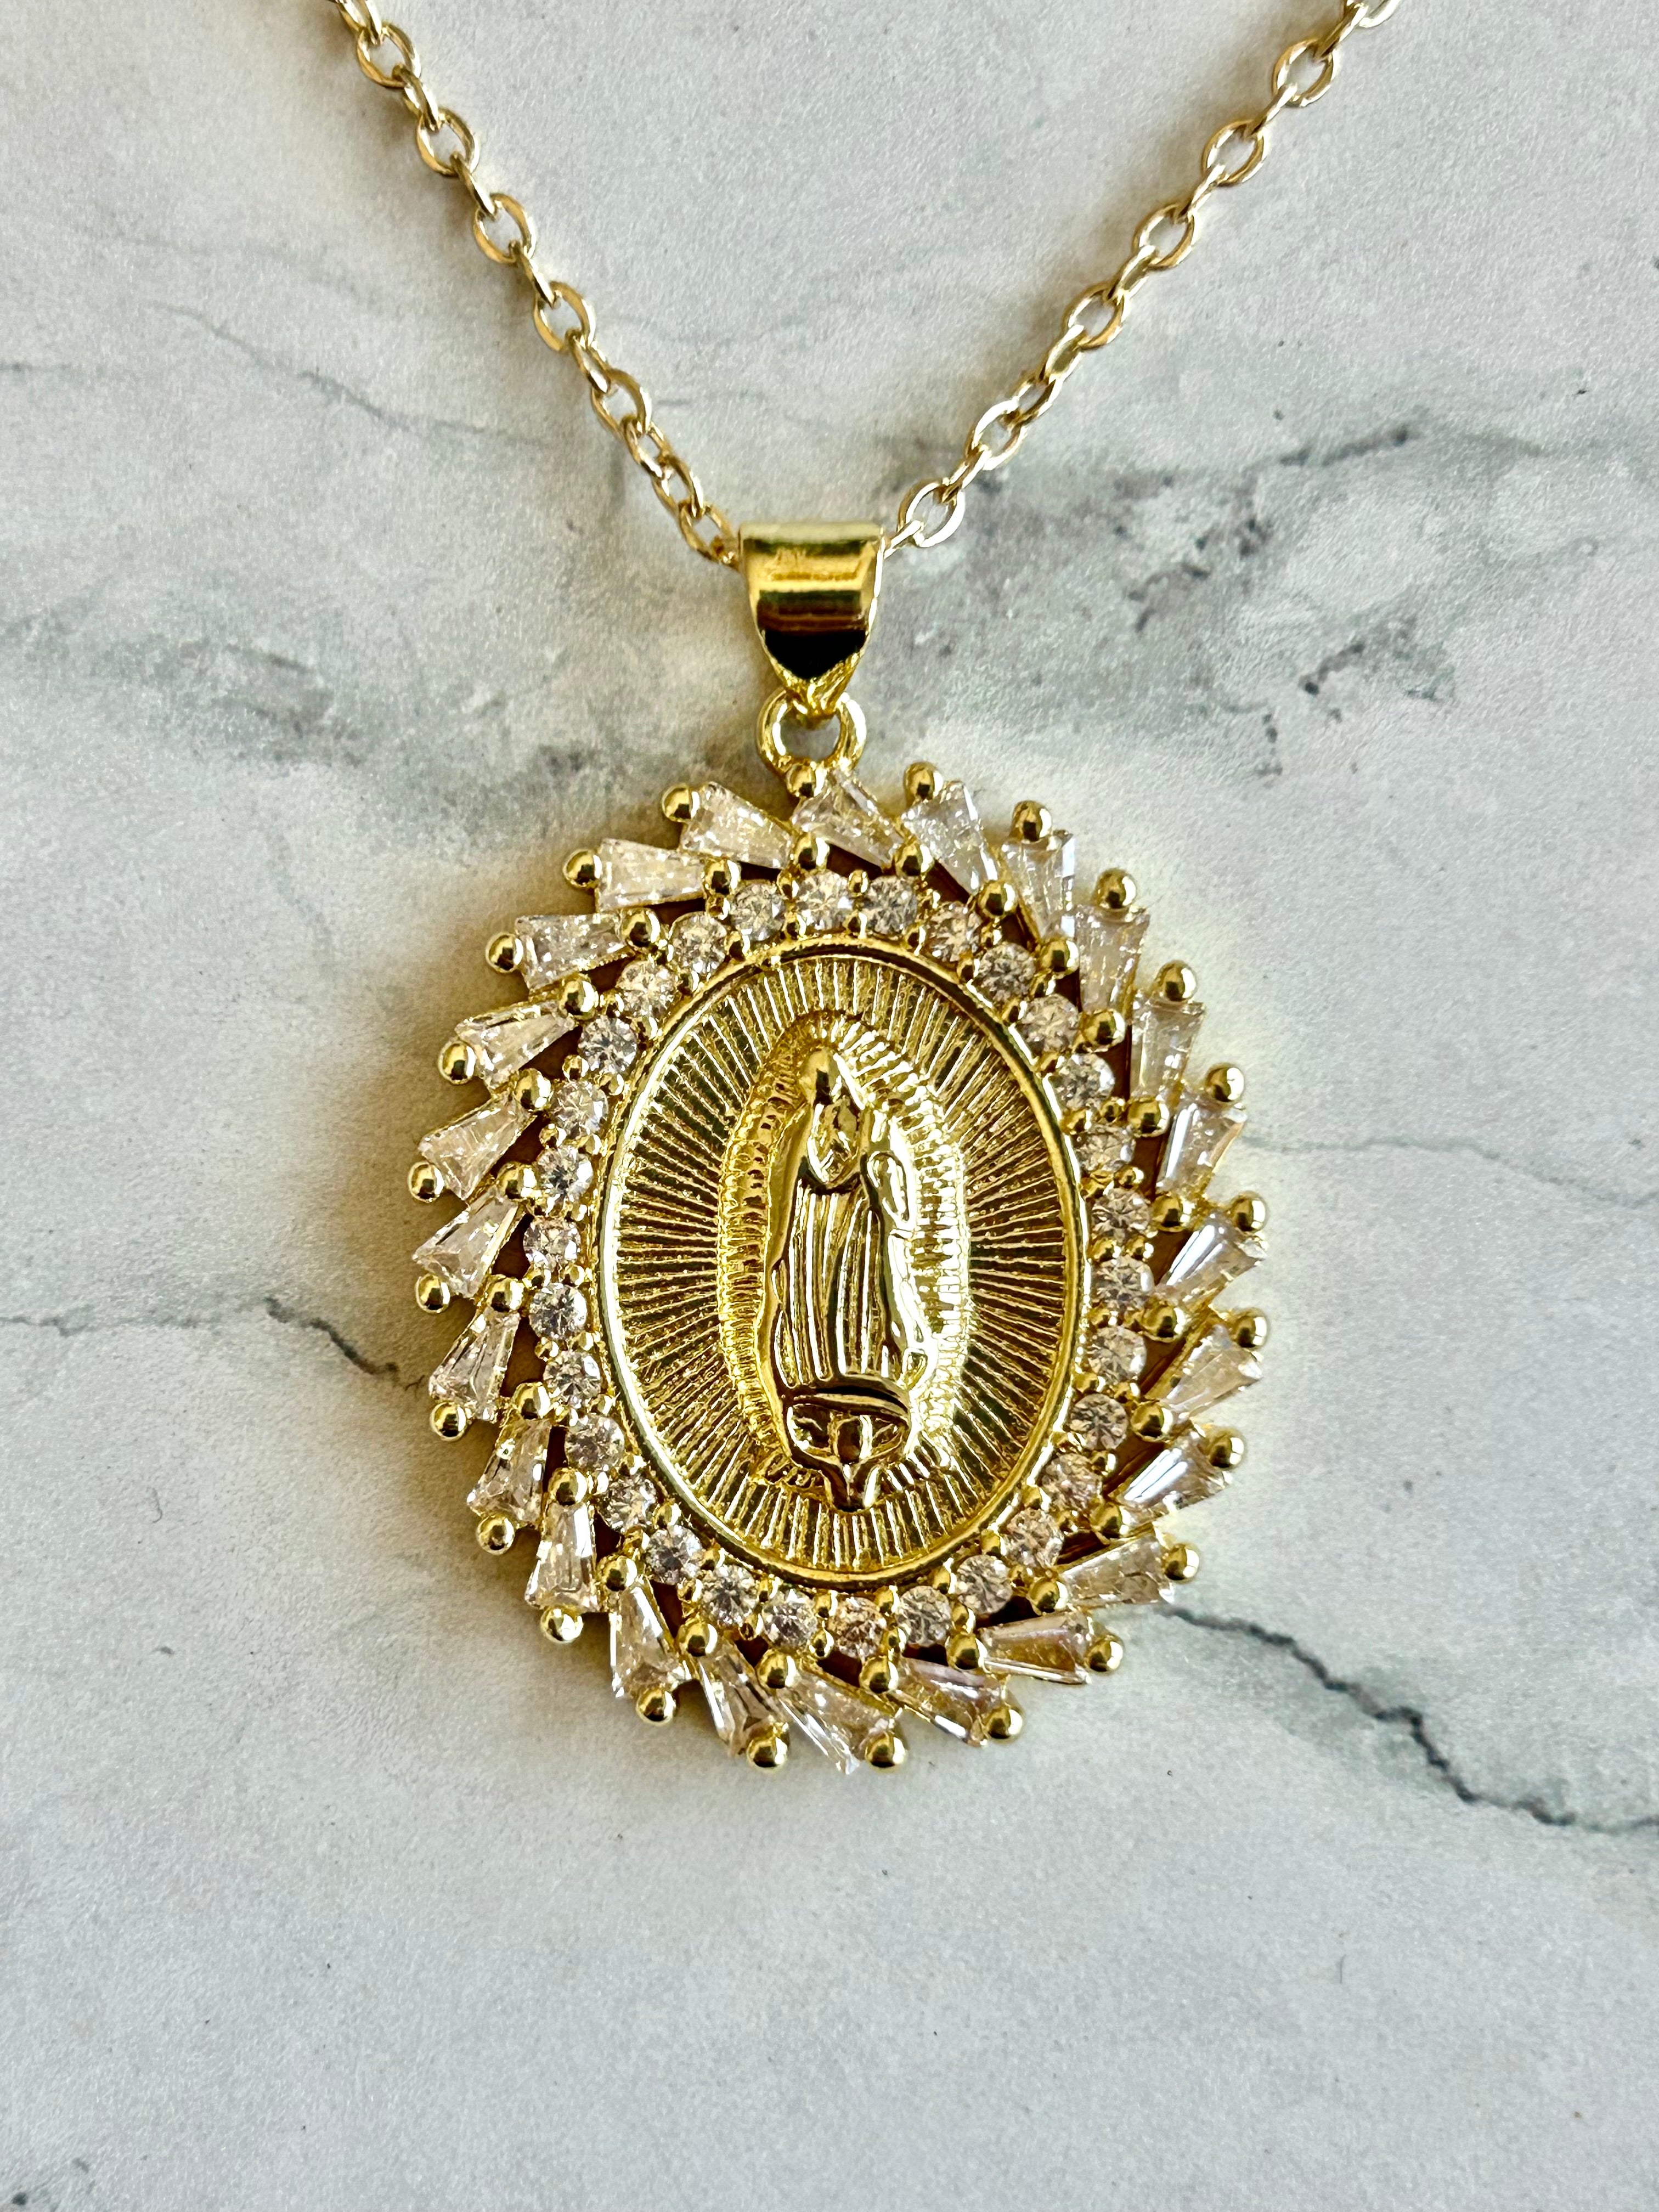 Catholic Shop - Buy religious gifts and Catholic jewelry online